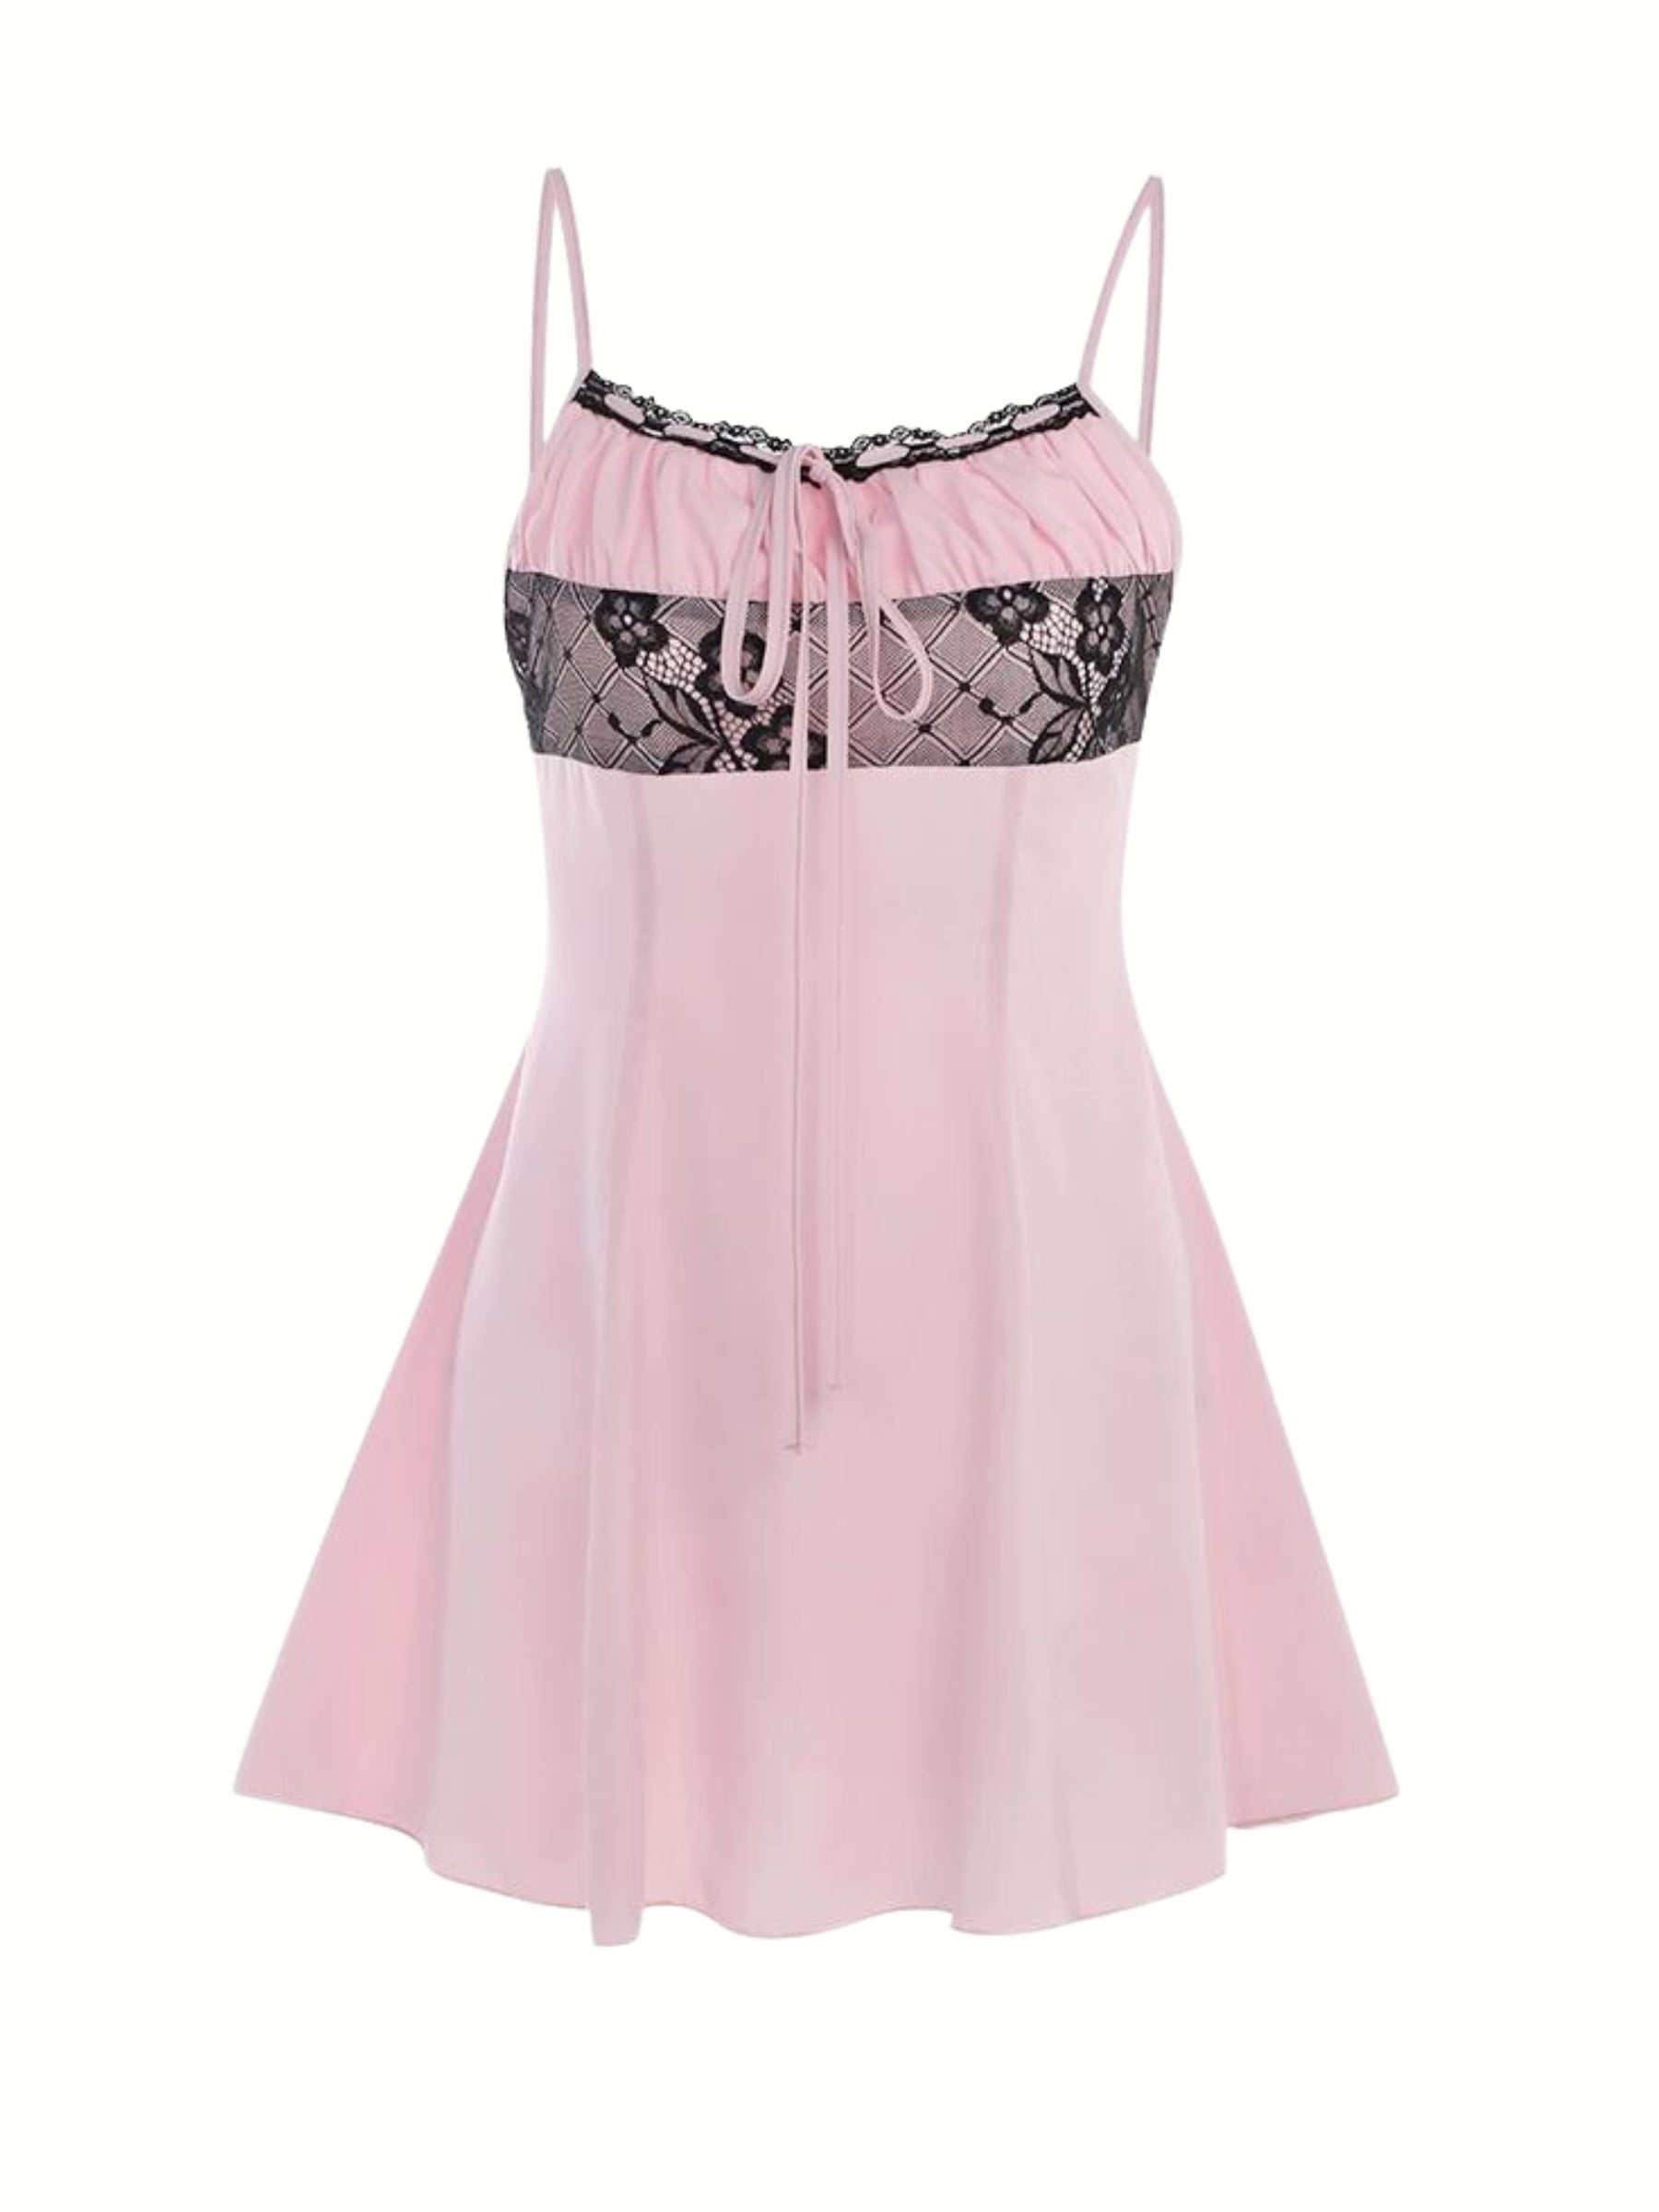 LaPose Fashion - Mandy Slip Mini Dress - Birthday Dresses, Daytime Dresses, Dresses, Going Out Dresses, Mini Dresses, Party & Coctail Dresses